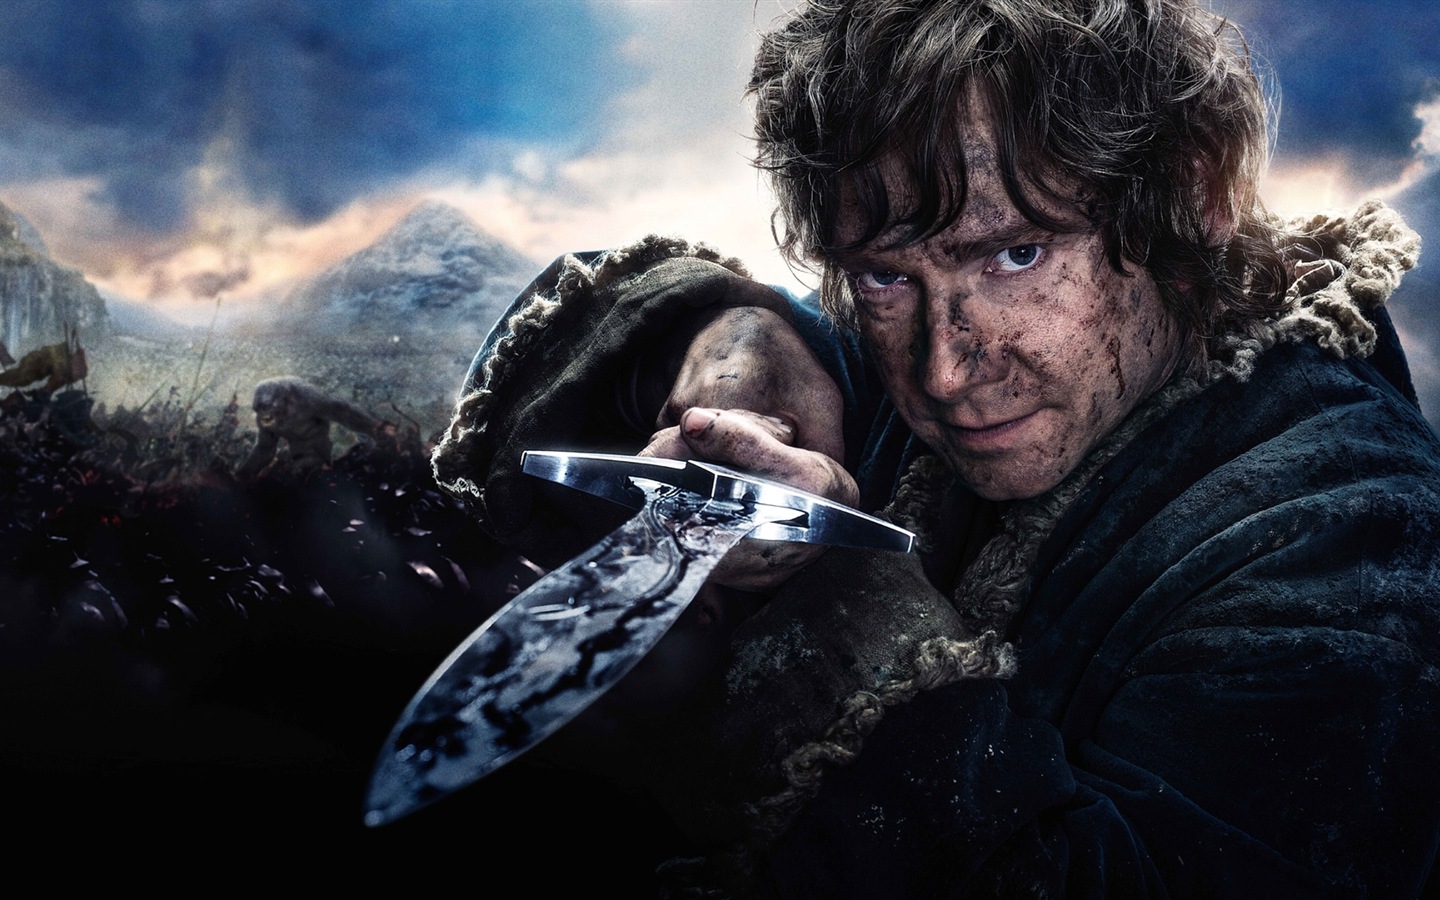 El Hobbit: La Batalla de los Cinco Ejércitos, fondos de pantalla de películas de alta definición #7 - 1440x900